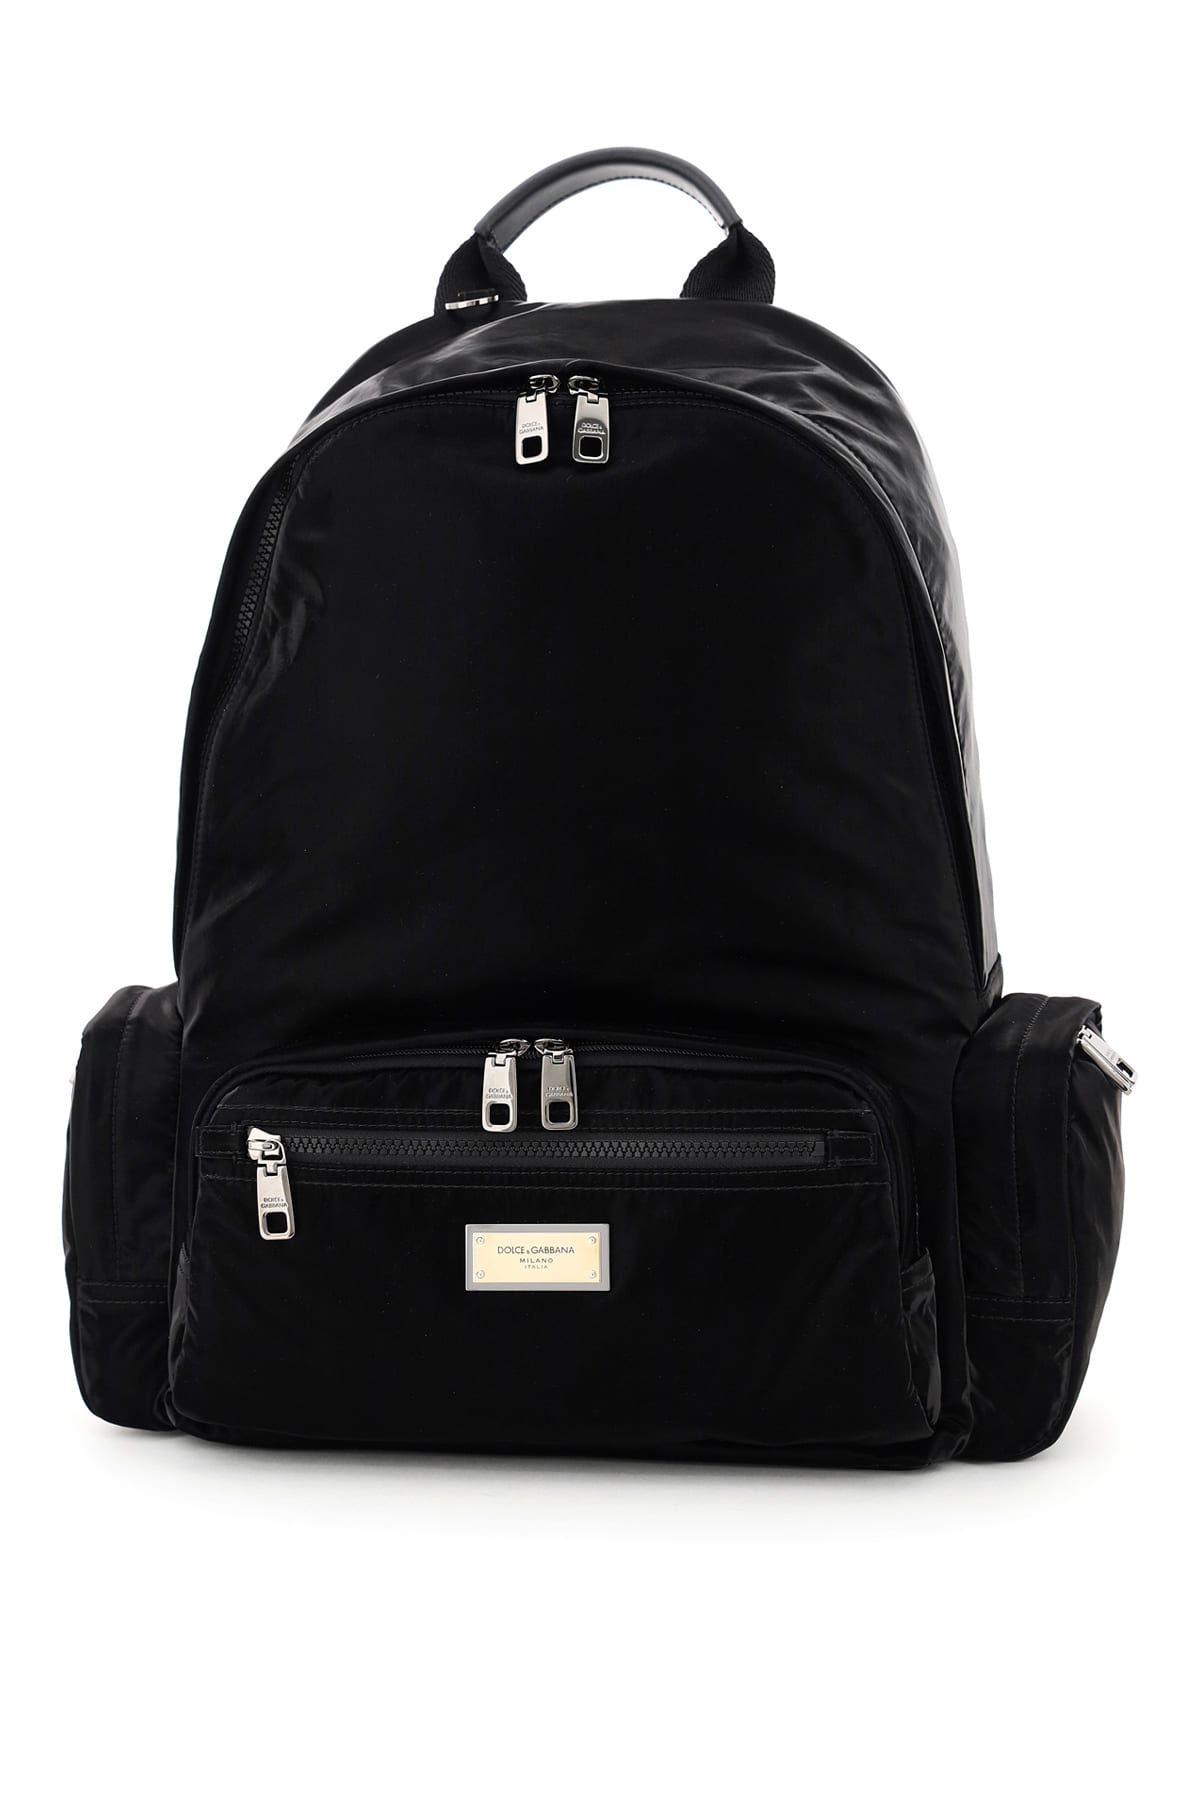 Dolce & Gabbana Samboil Nylon Backpack In Nero | ModeSens